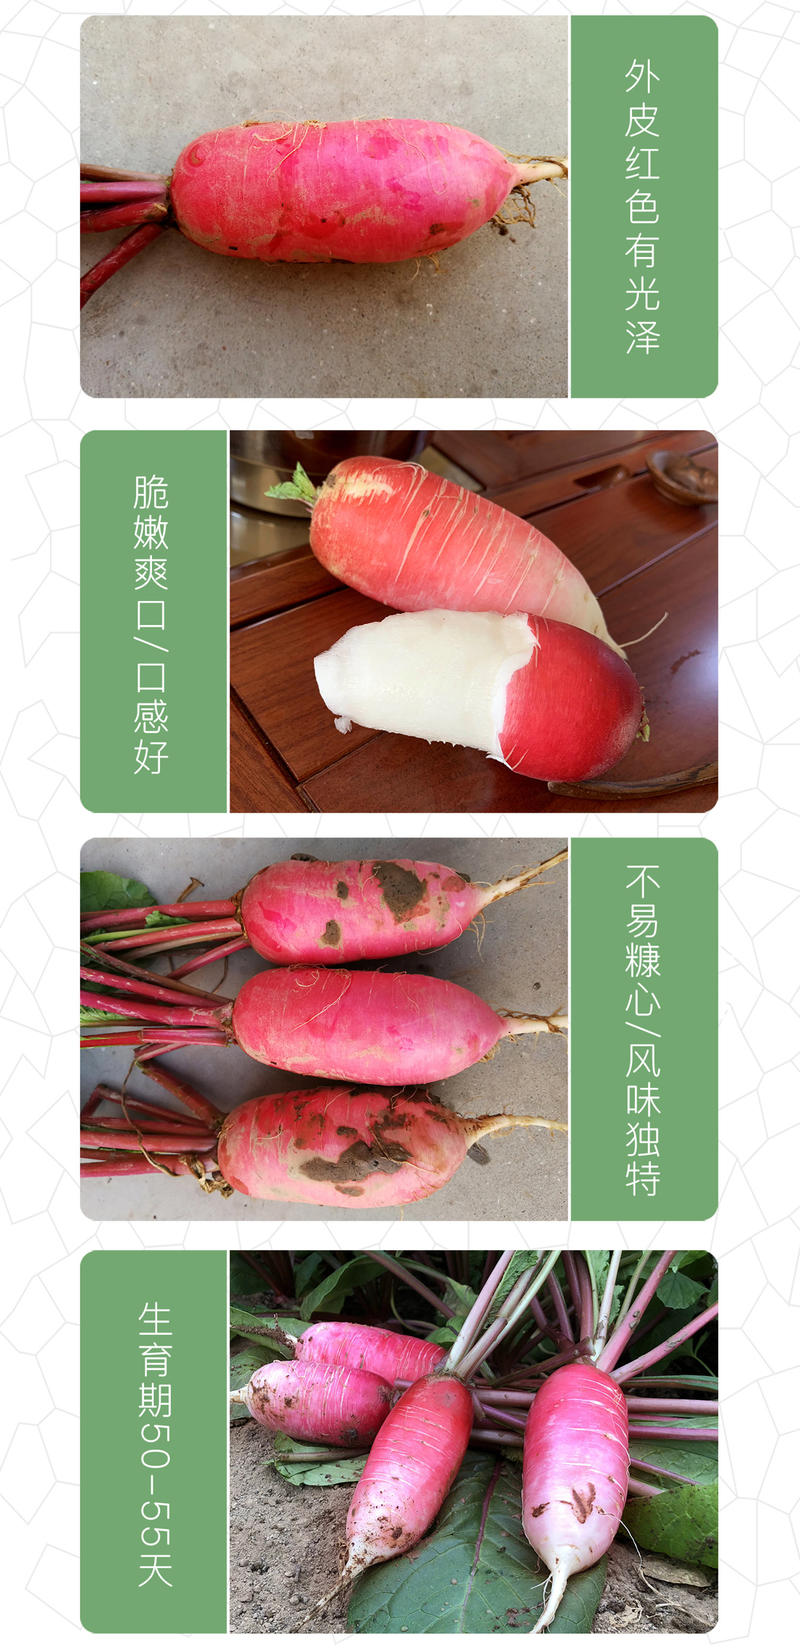 中科茂华蔬菜种子三季脆红冈萝卜种子不糠心大连冈水萝卜